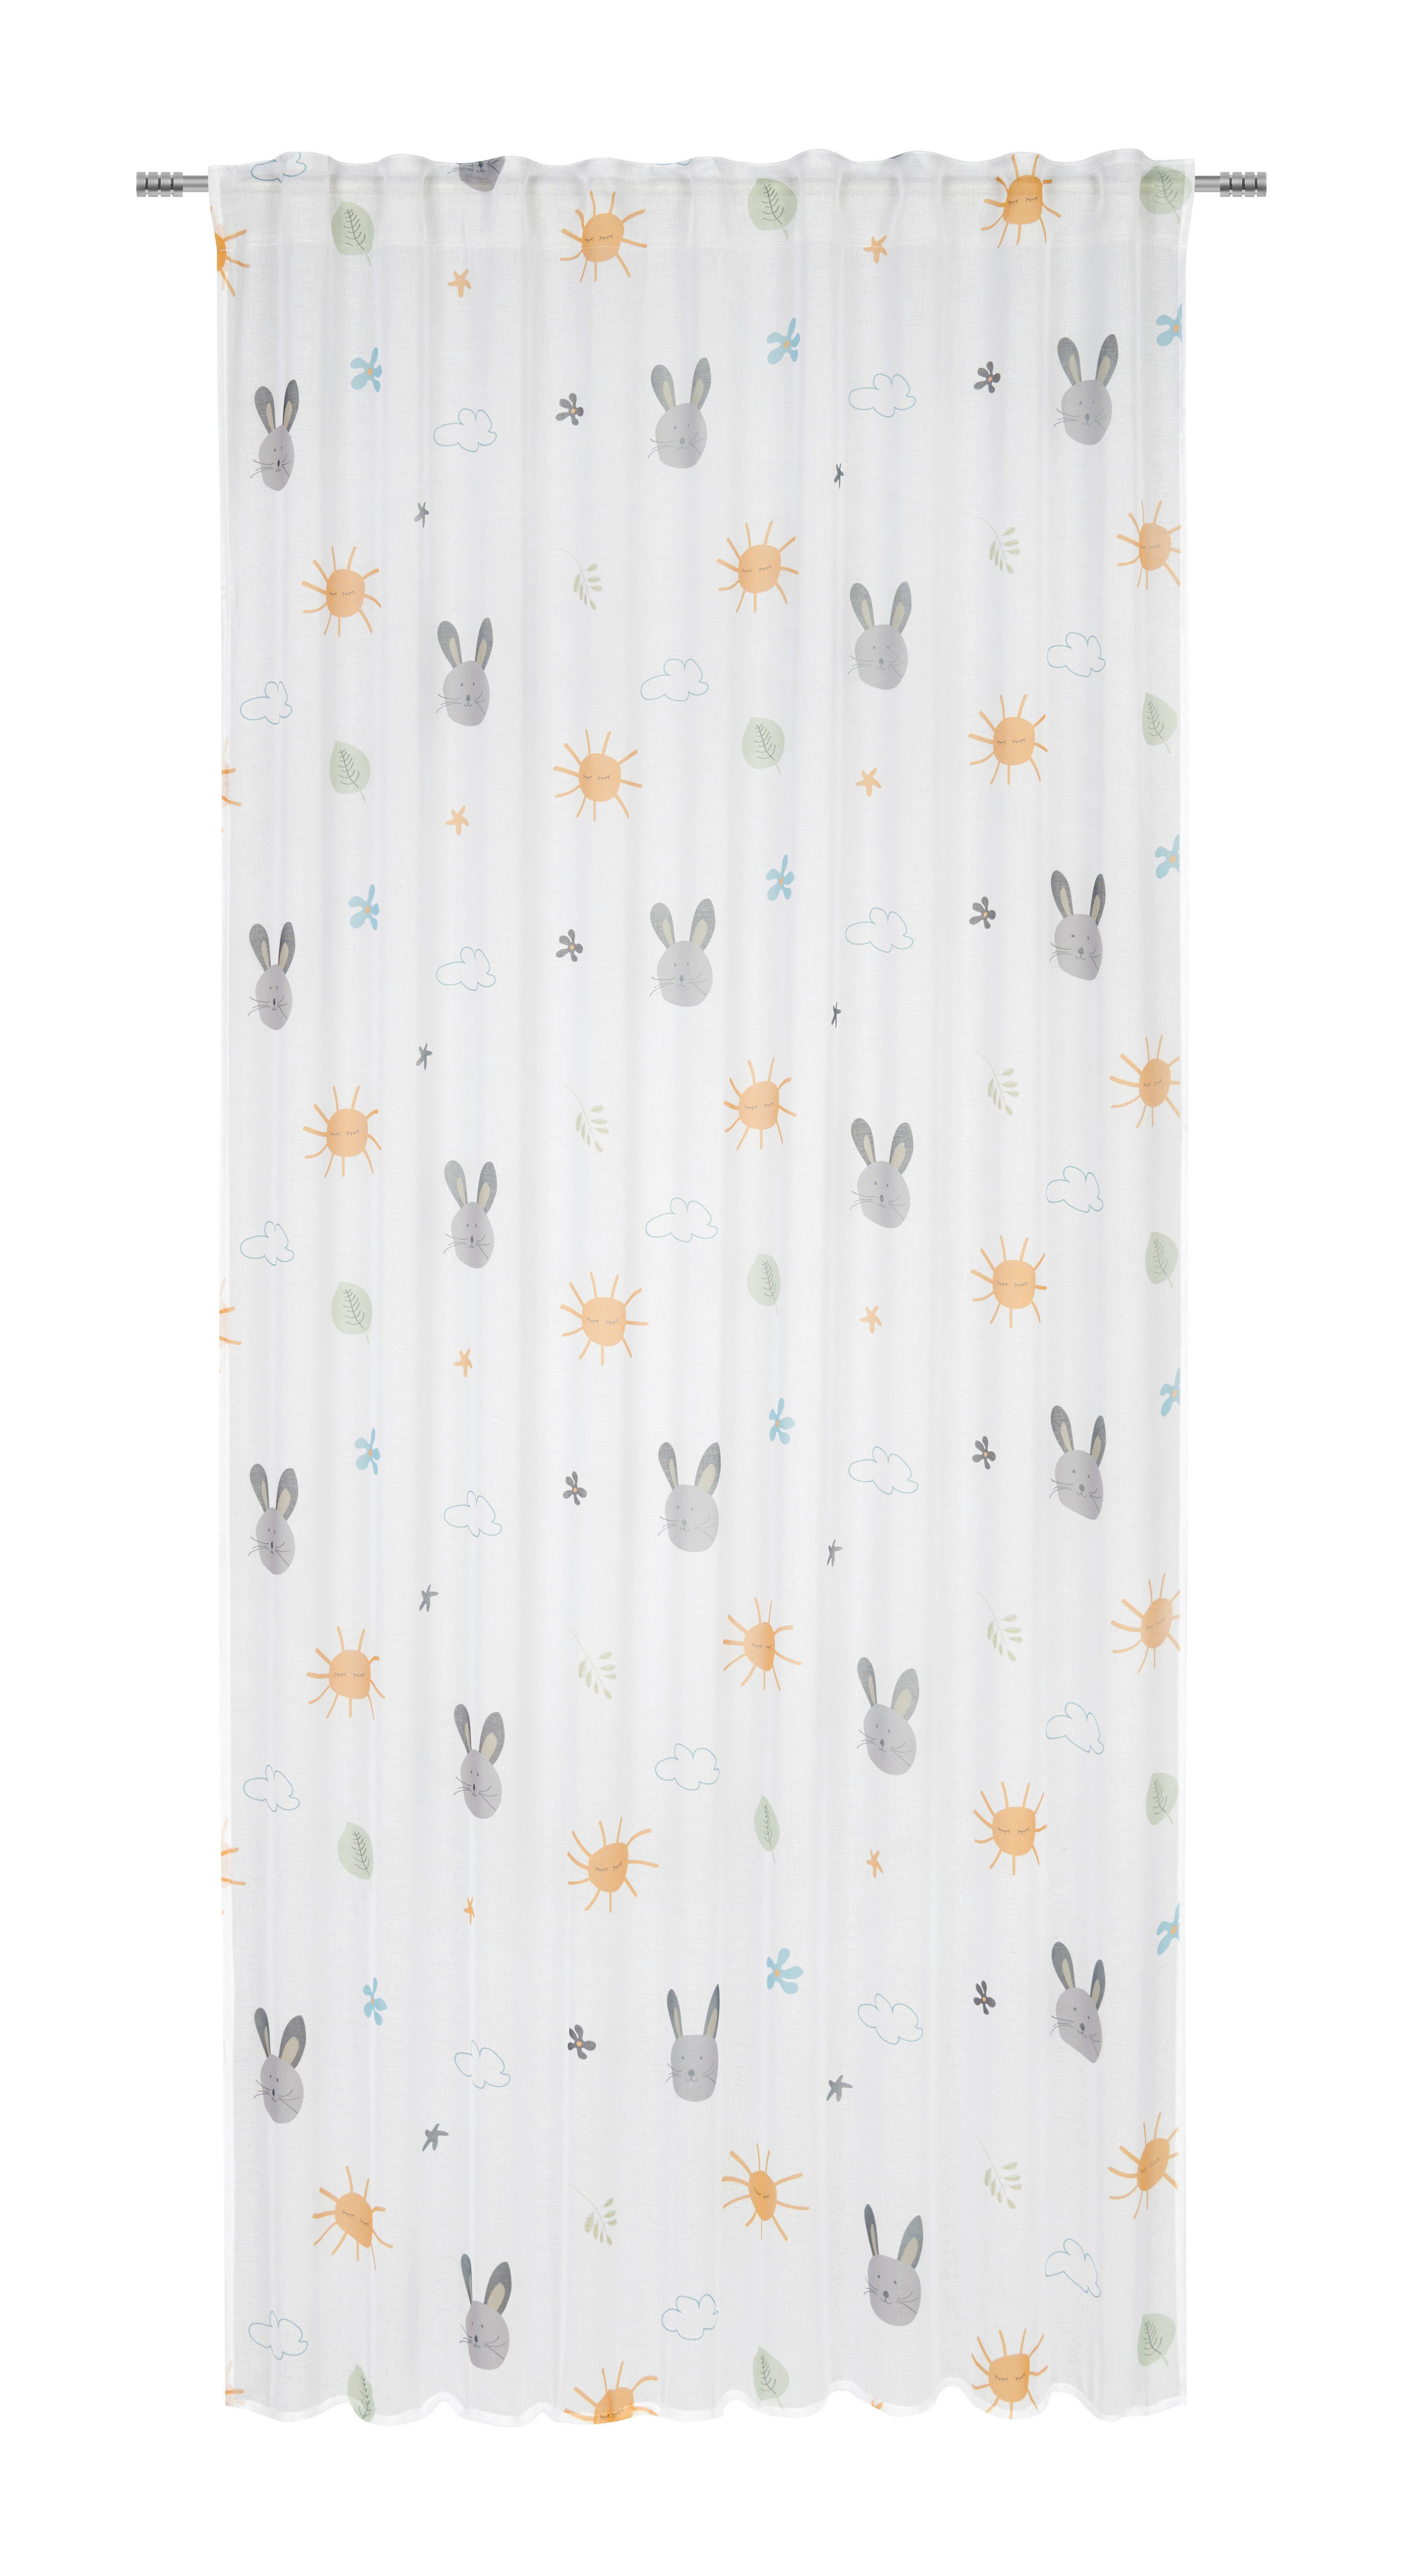 Kindervorhang Lilly in Weiß ca. 140x245cm - Weiß, Textil (140/245cm) - Modern Living